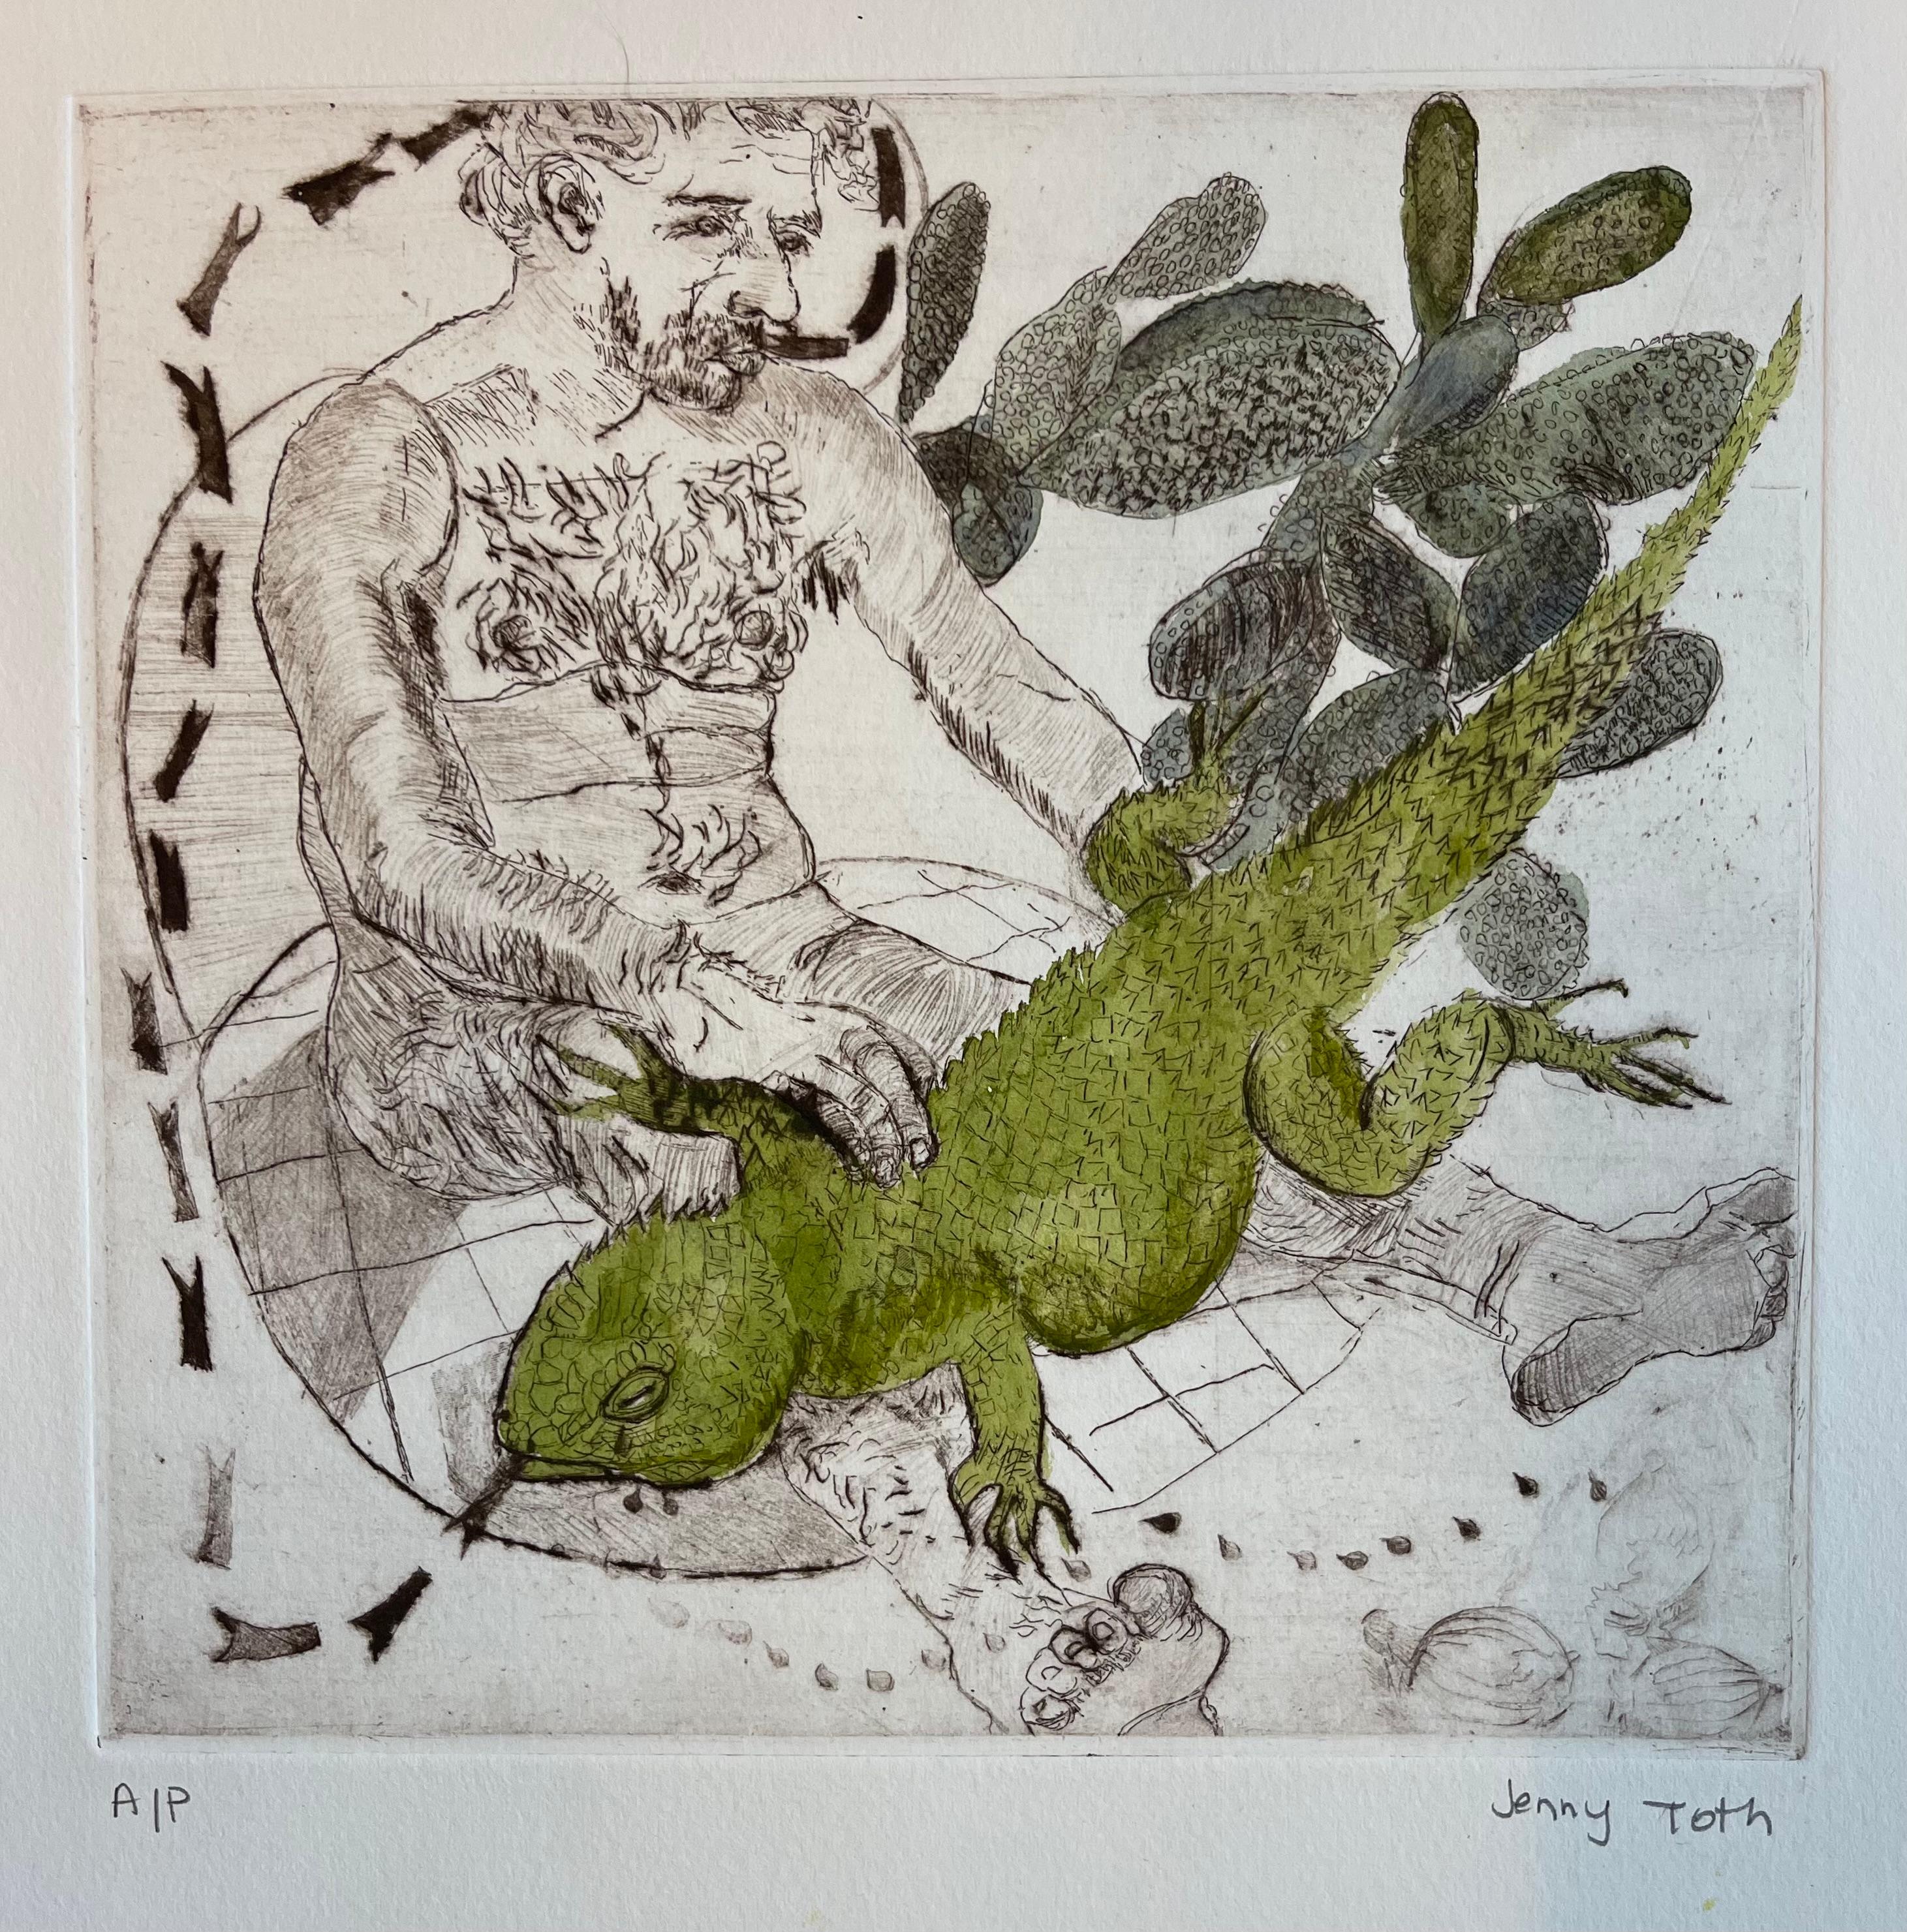 Nude Print Jenny Toth - Lizard Tongues and Tears, homme nu et lézard, principalement monochromatique w vert